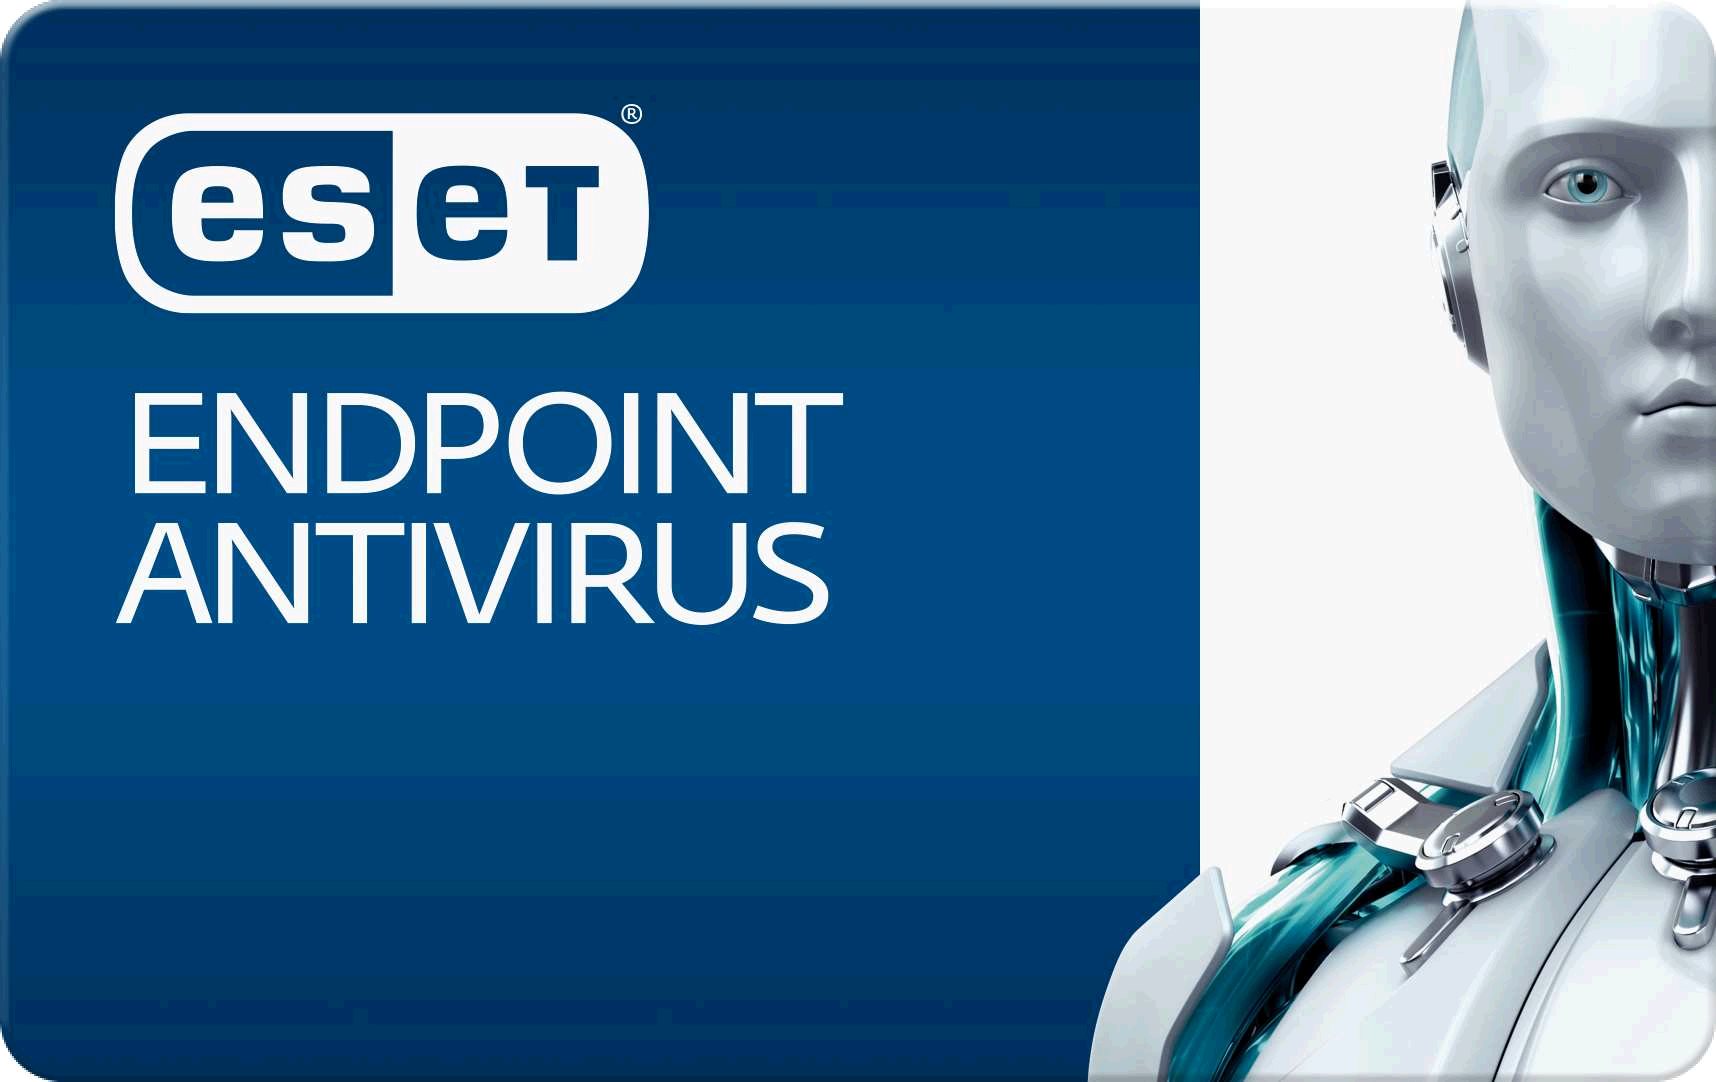 eset endpoint antivirus update download